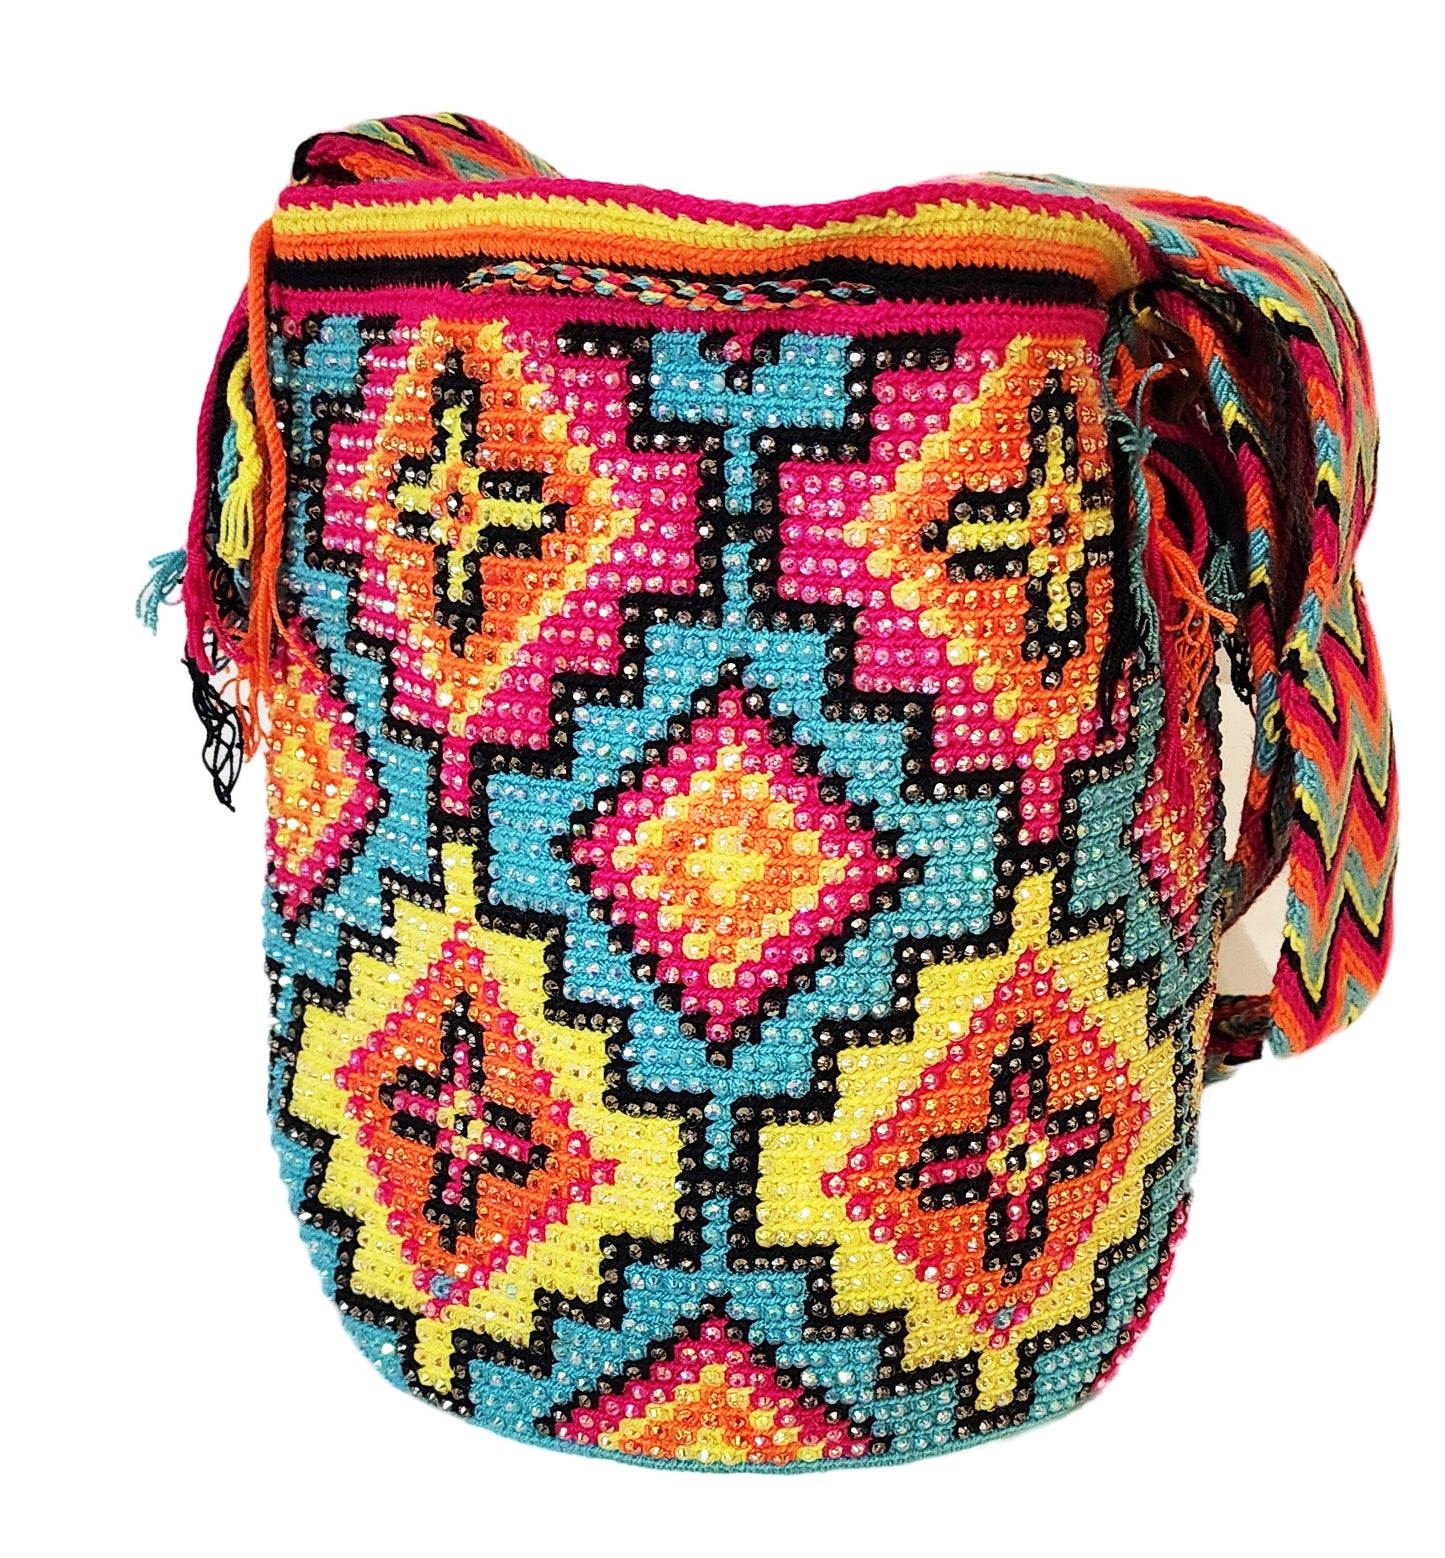 Elisa Handmade Crochet Wayuu Mochila Bag - Wuitusu